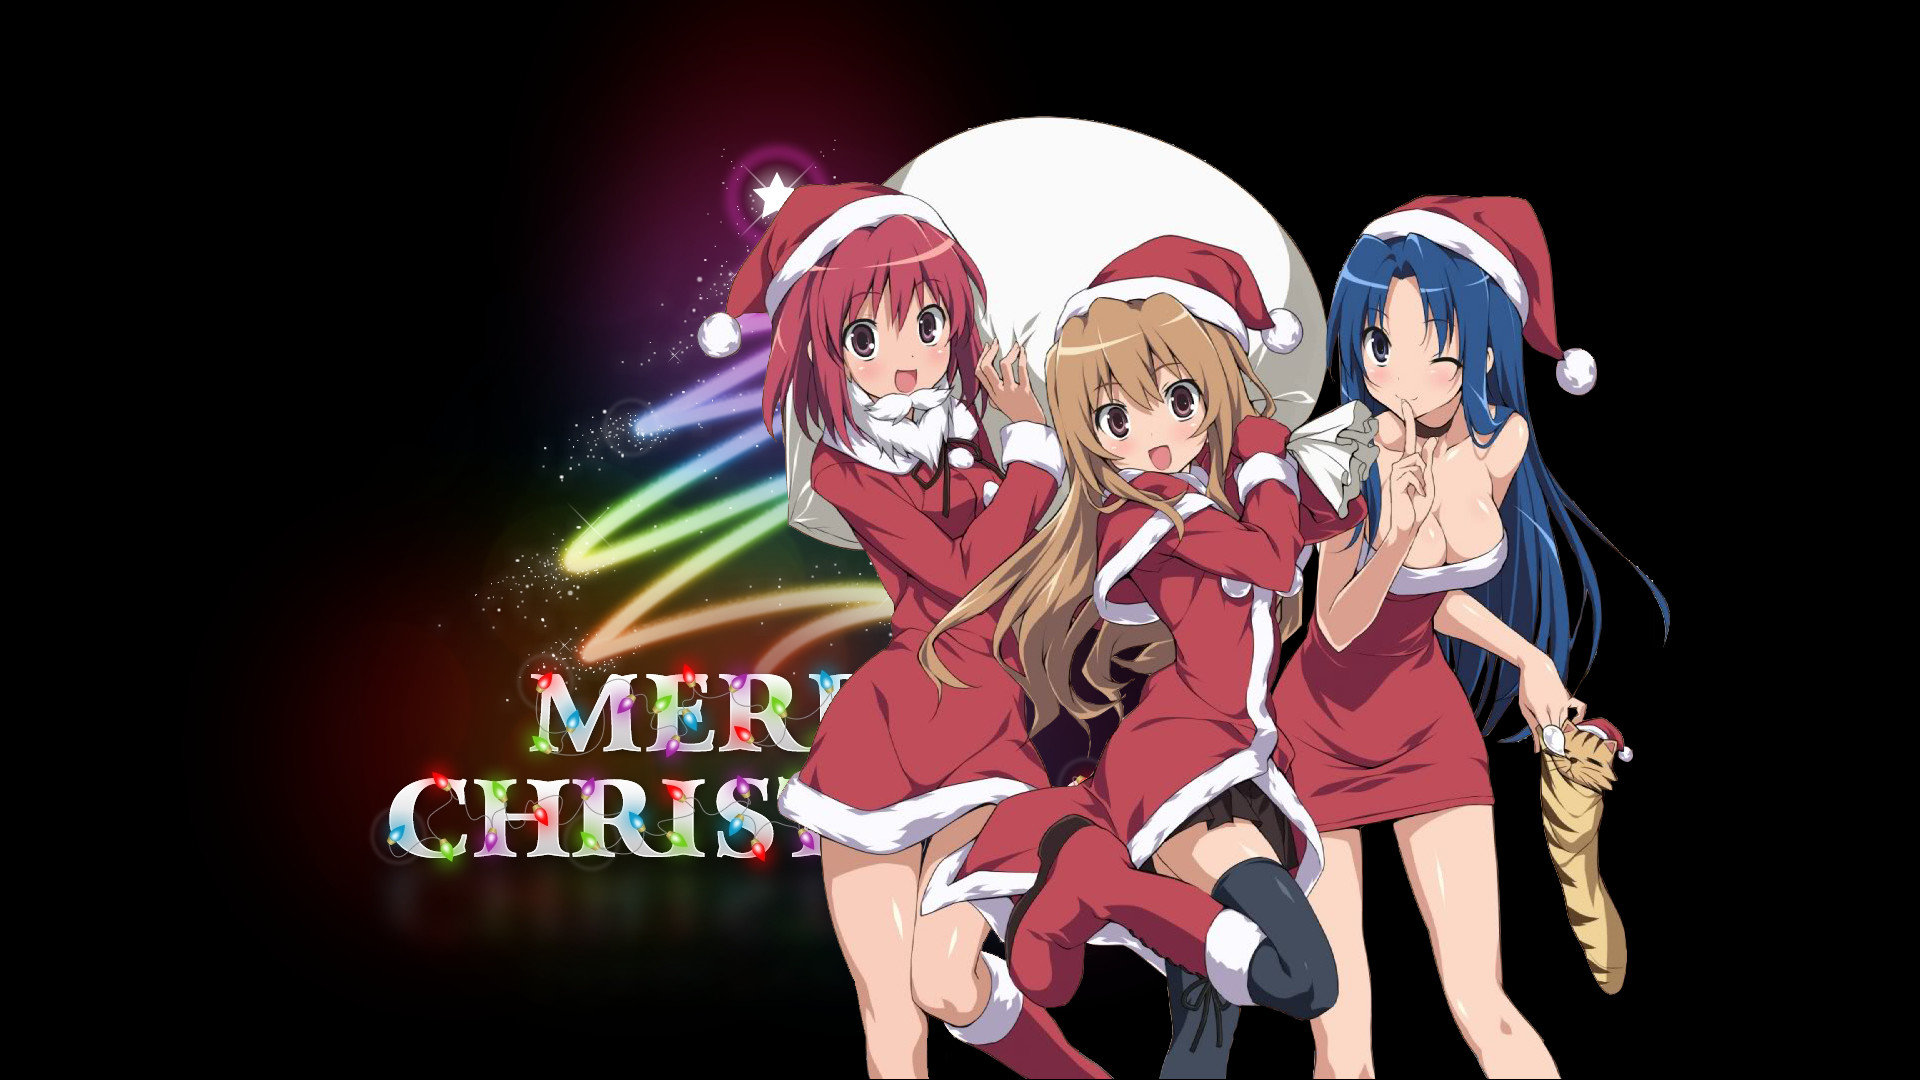 Christmas Anime wallpaper 1920x1080 Full HD (1080p) desktop background